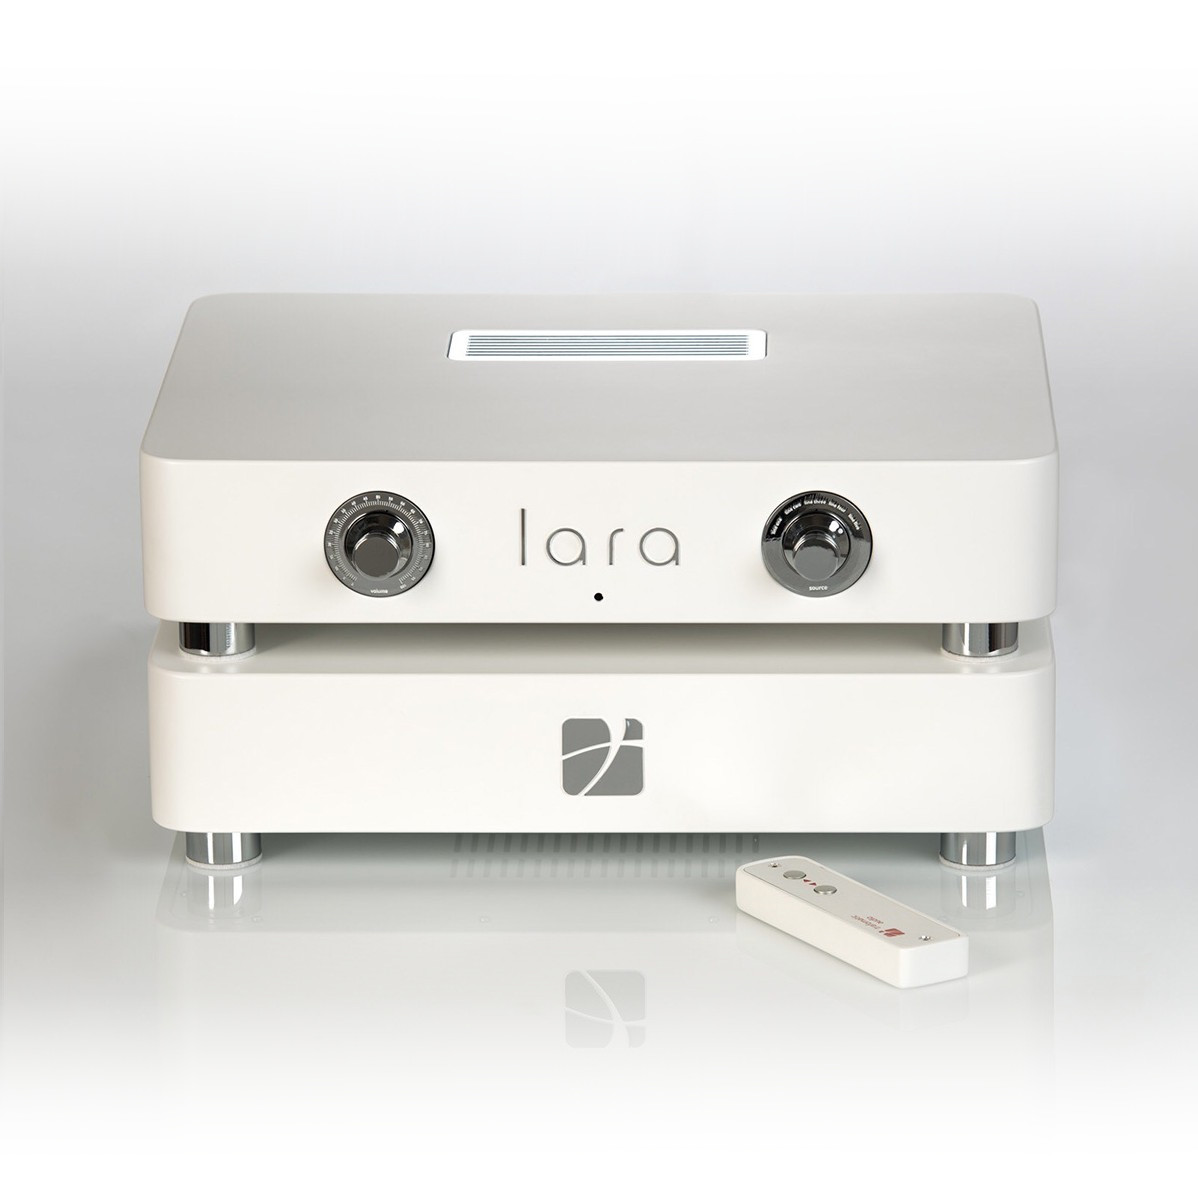 Усилители ламповые Trafomatic Audio Lara усилители ламповые trafomatic audio pandora